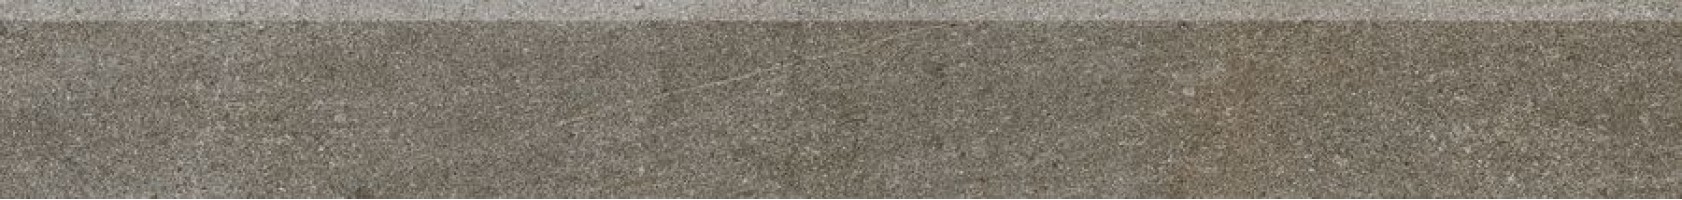 Плинтус Rako Quarzit коричневый 9.5x80 DSA89736